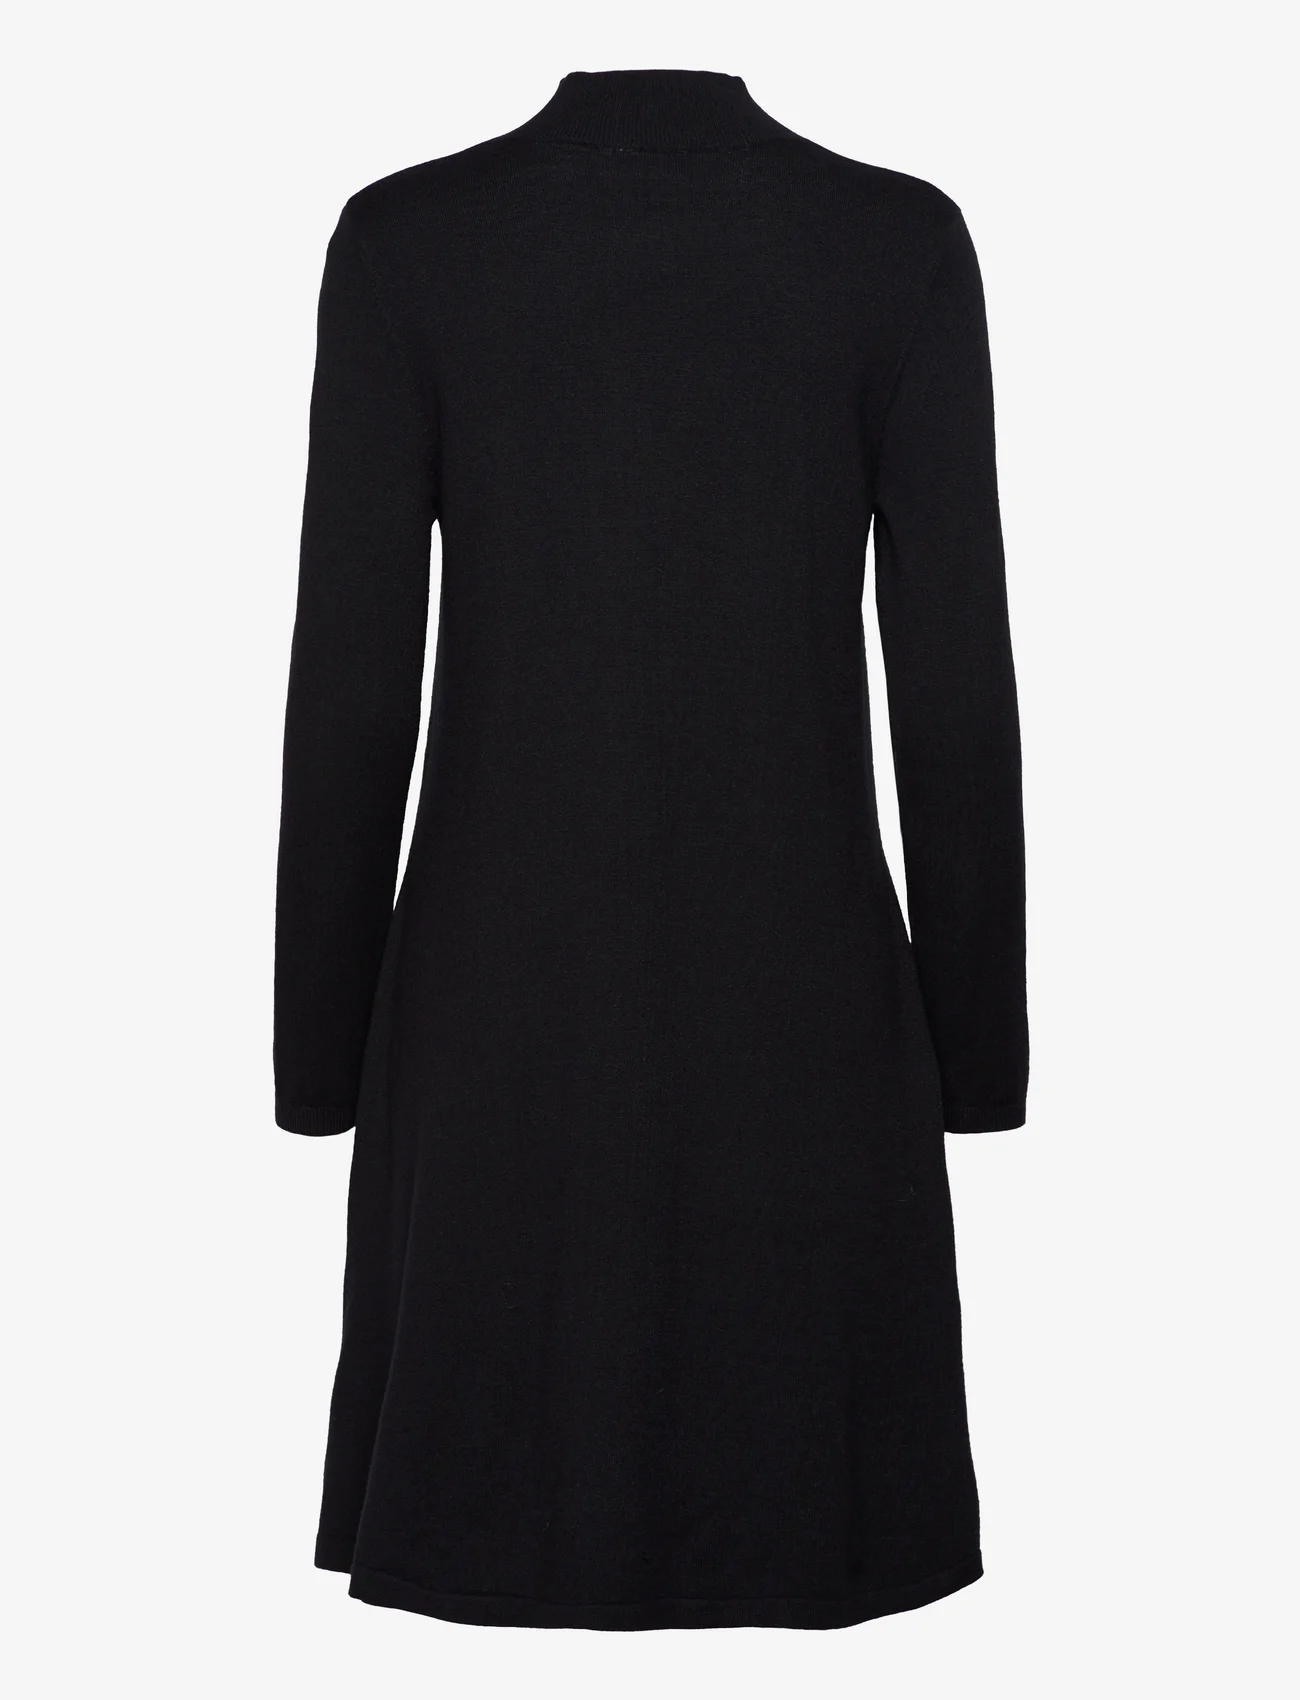 Vila - VICOMFY A-LINE ROLLNECK KNIT DRESS/SU/PB - strikkede kjoler - black - 1